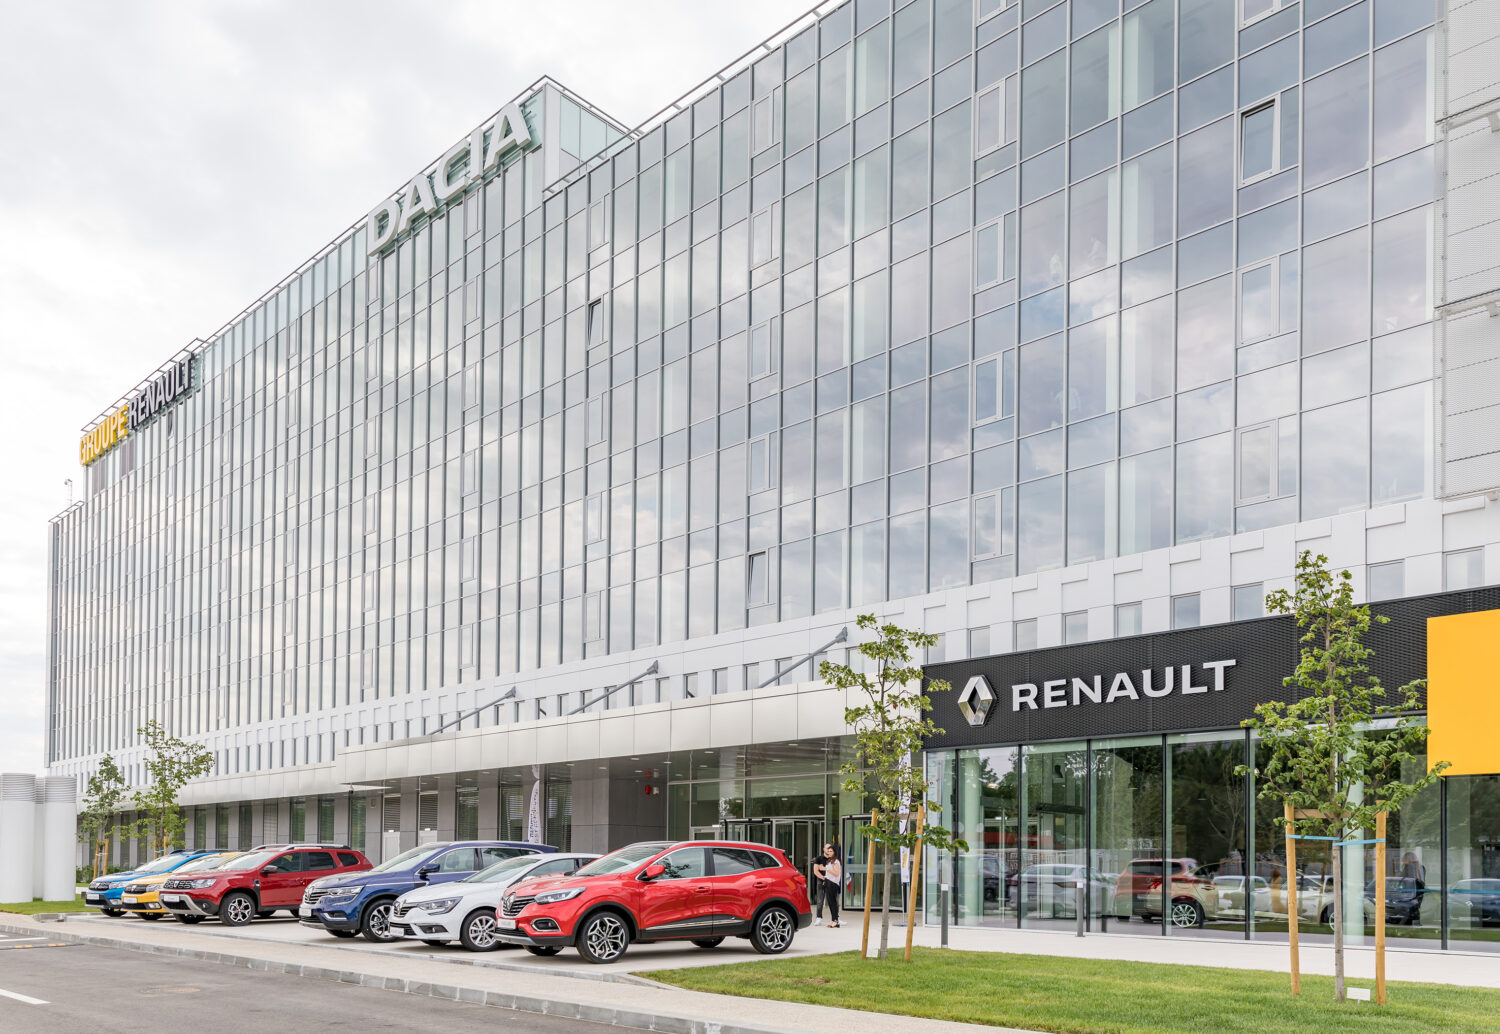 2019 - Inauguration du nouveau centre Renault Bucharest Connected